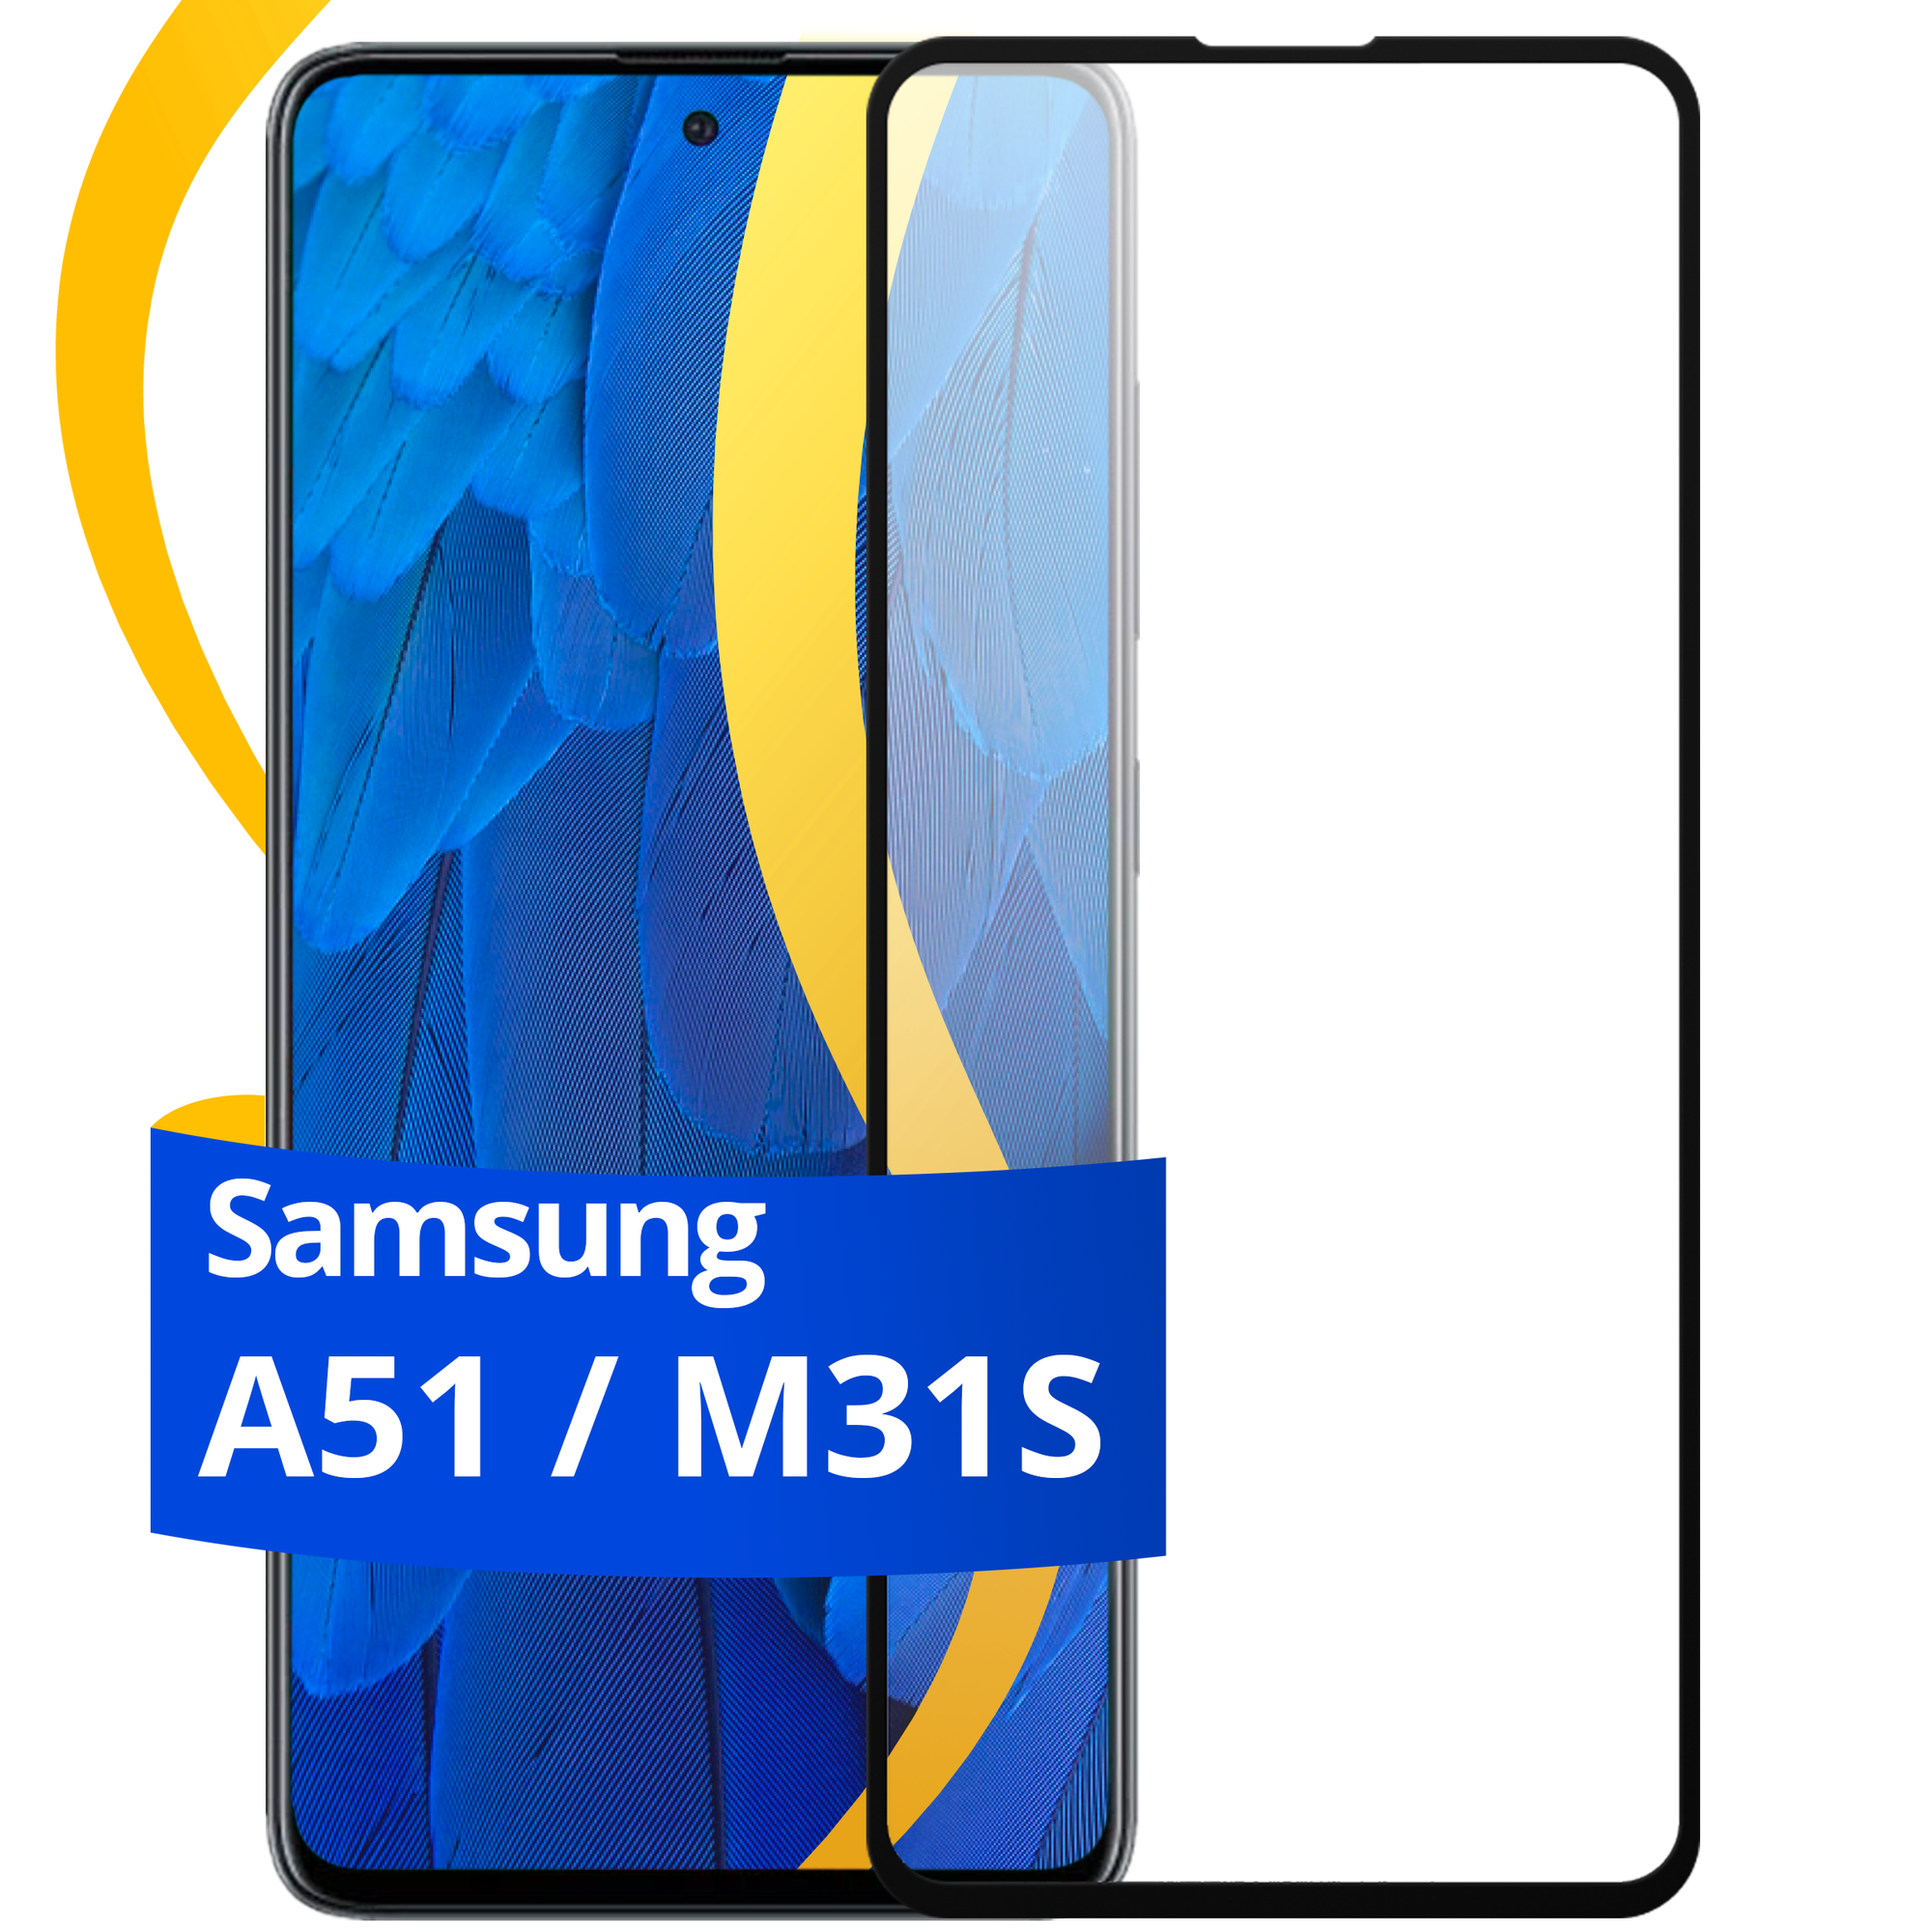 Глянцевое защитное стекло для телефона Samsung Galaxy A51 и M31S / Противоударное стекло с олеофобным покрытием на смартфон Самсунг Галакси А51 и М31С